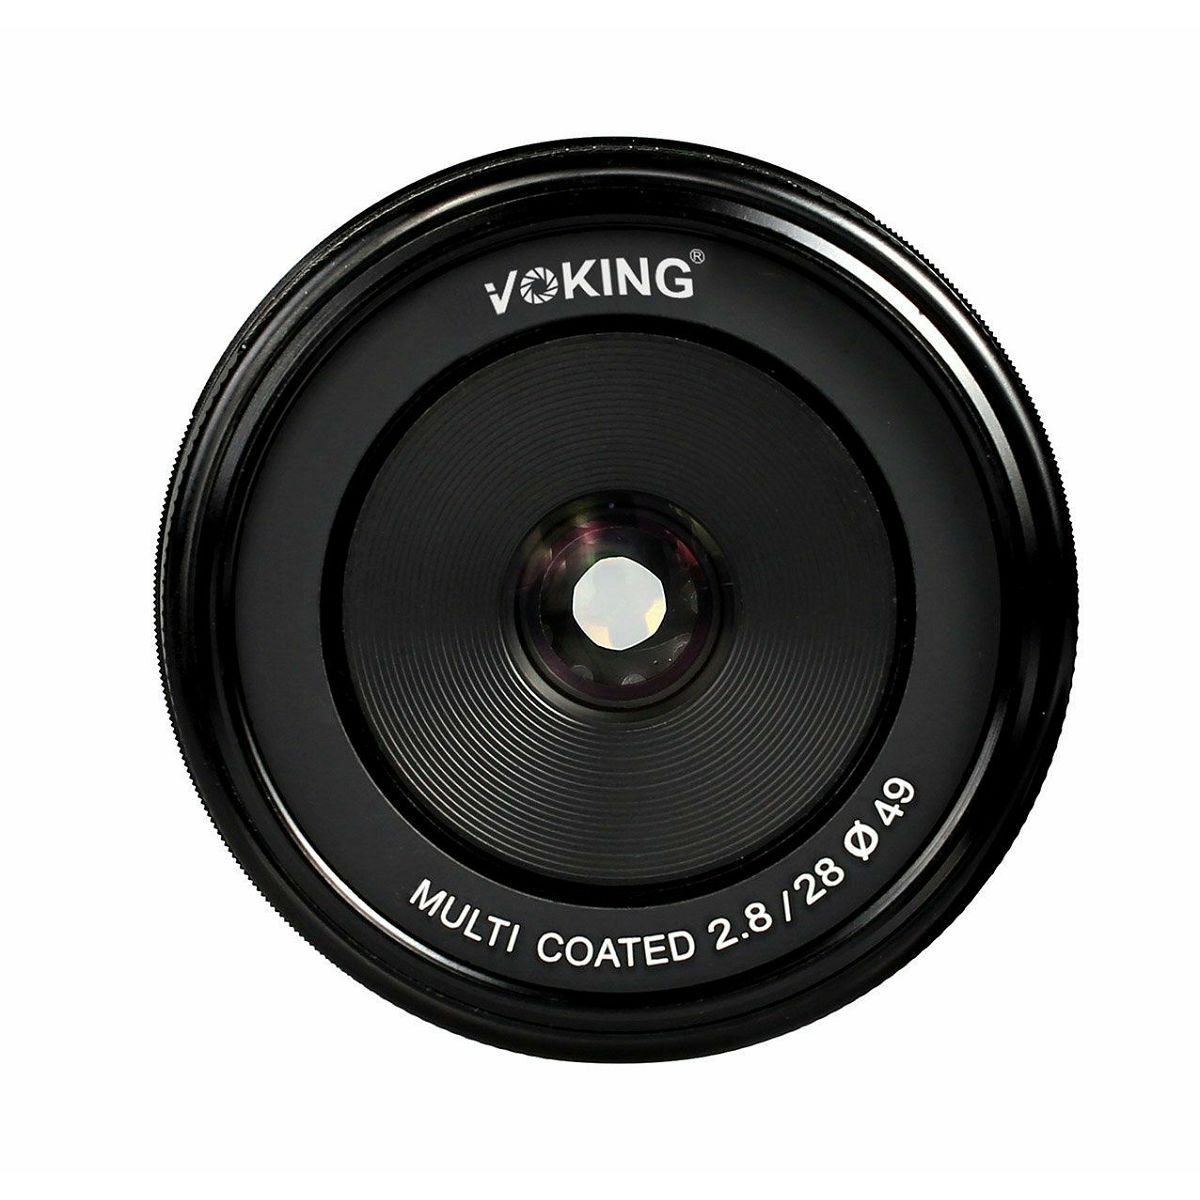 Voking 28mm F2.8 širokokutni objektiv za Nikon 1 mirrorless (VK28-2.8-N)